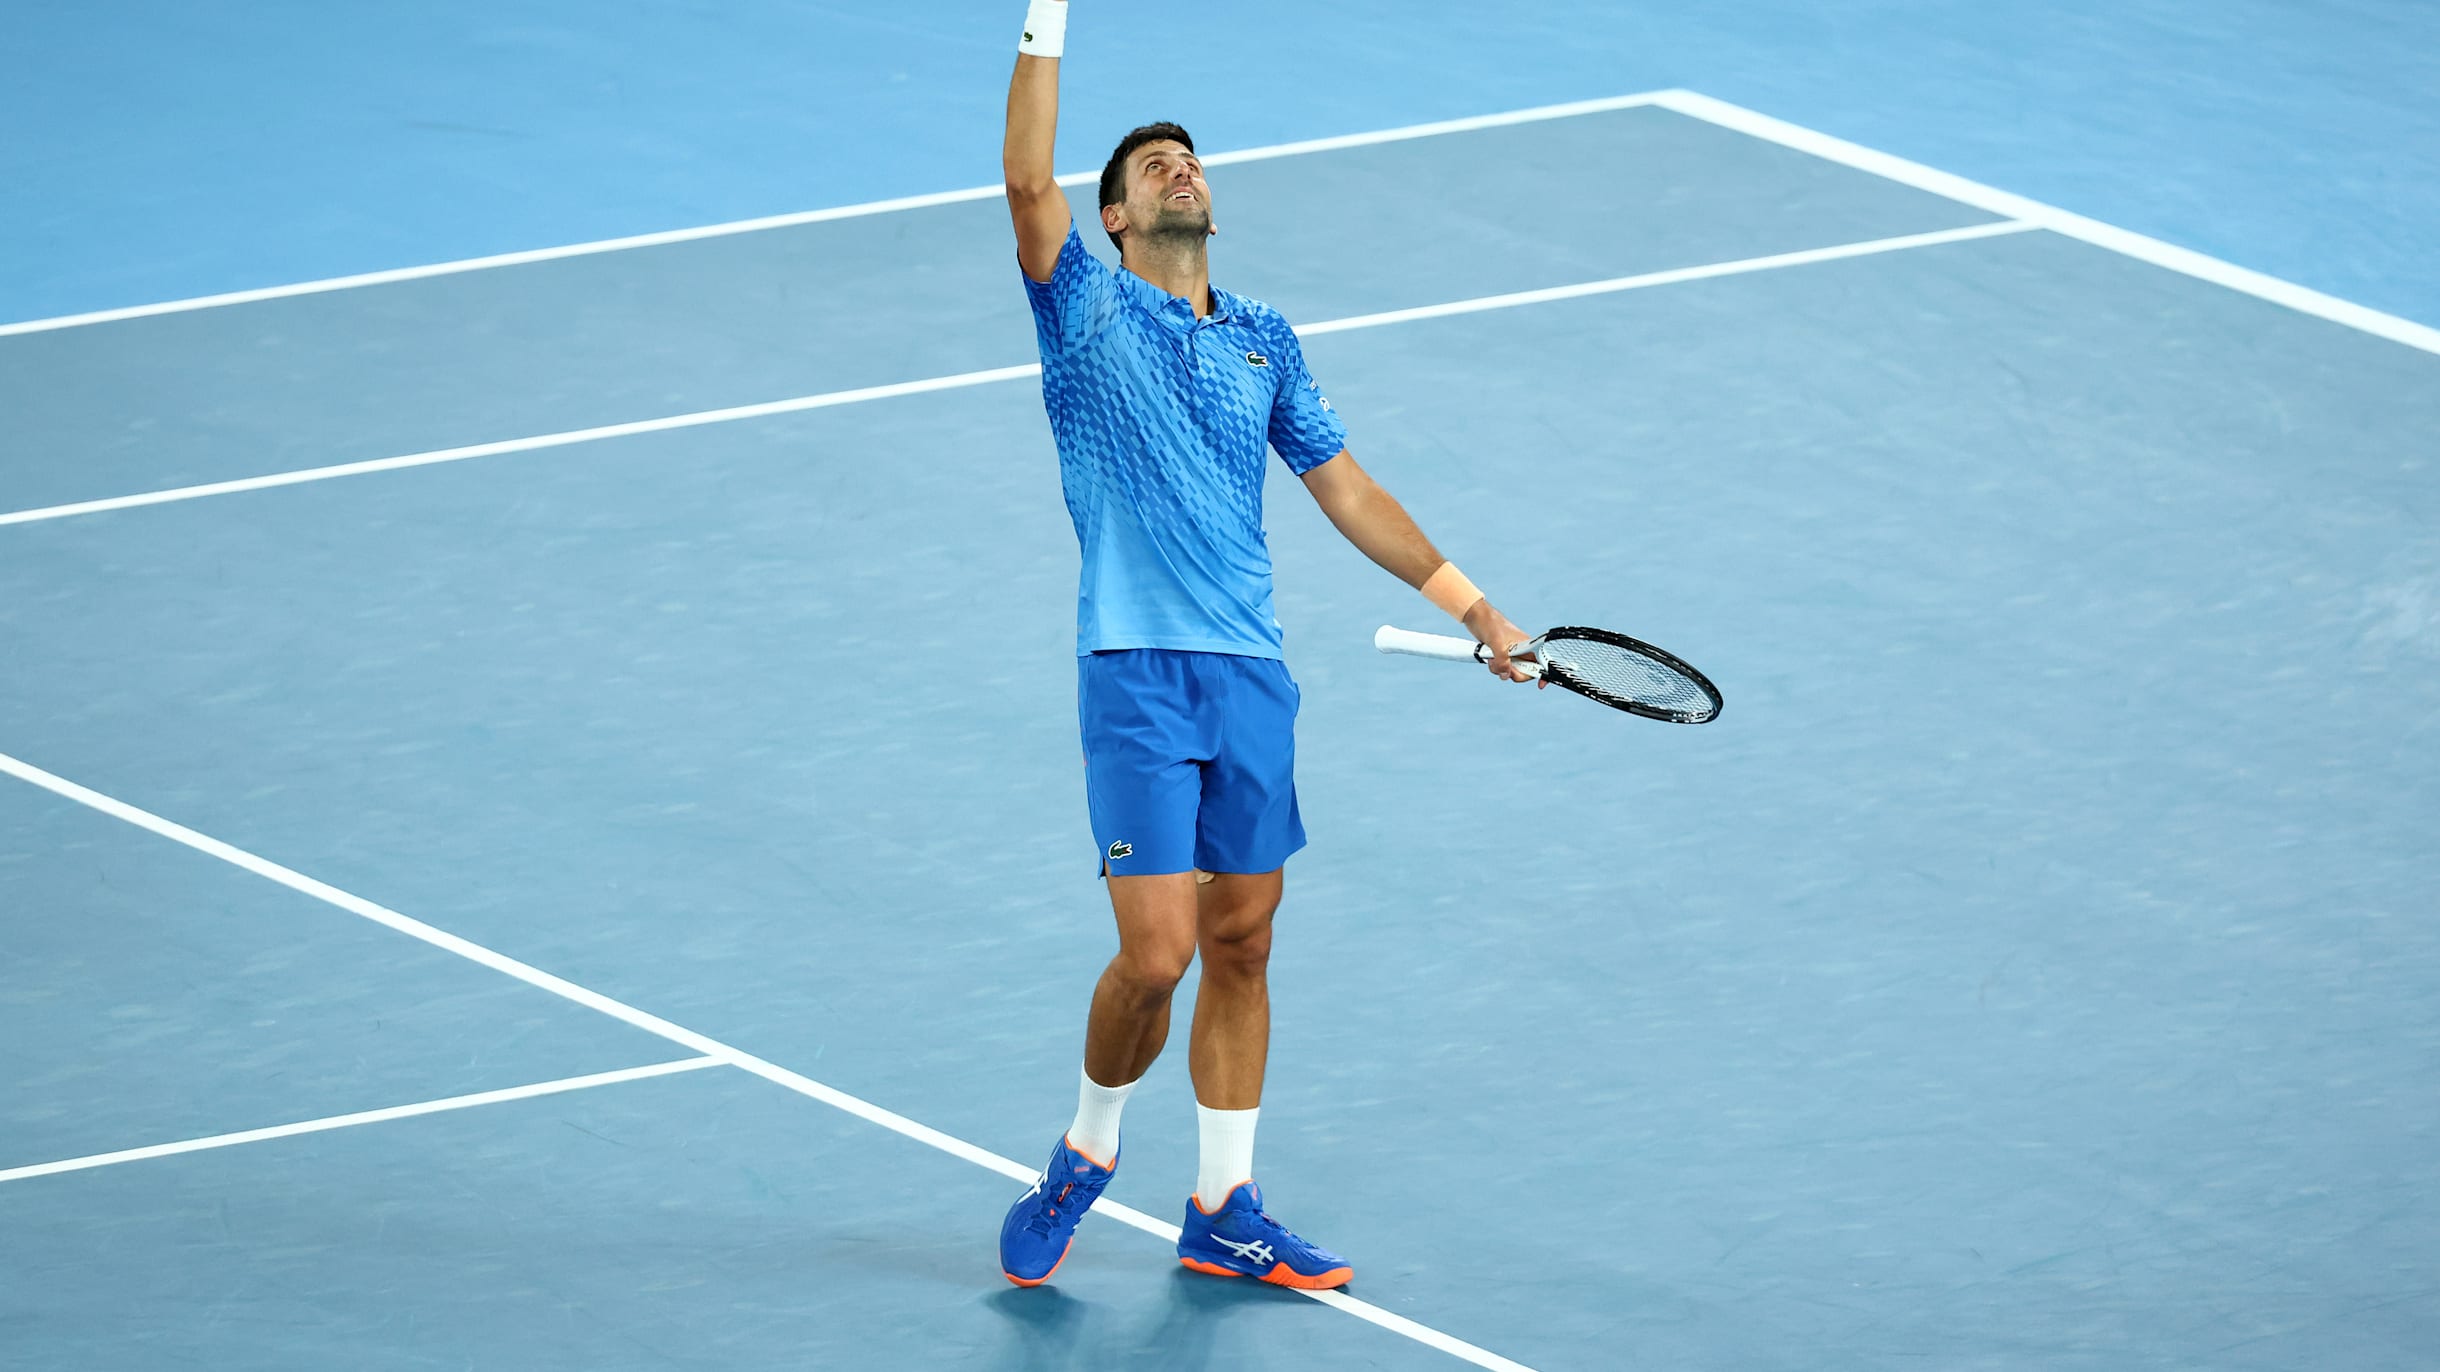 Nível de Djokovic assombra até amigo: 'Nós jogamos tênis, mas eu não sei o  que ele joga' - ESPN